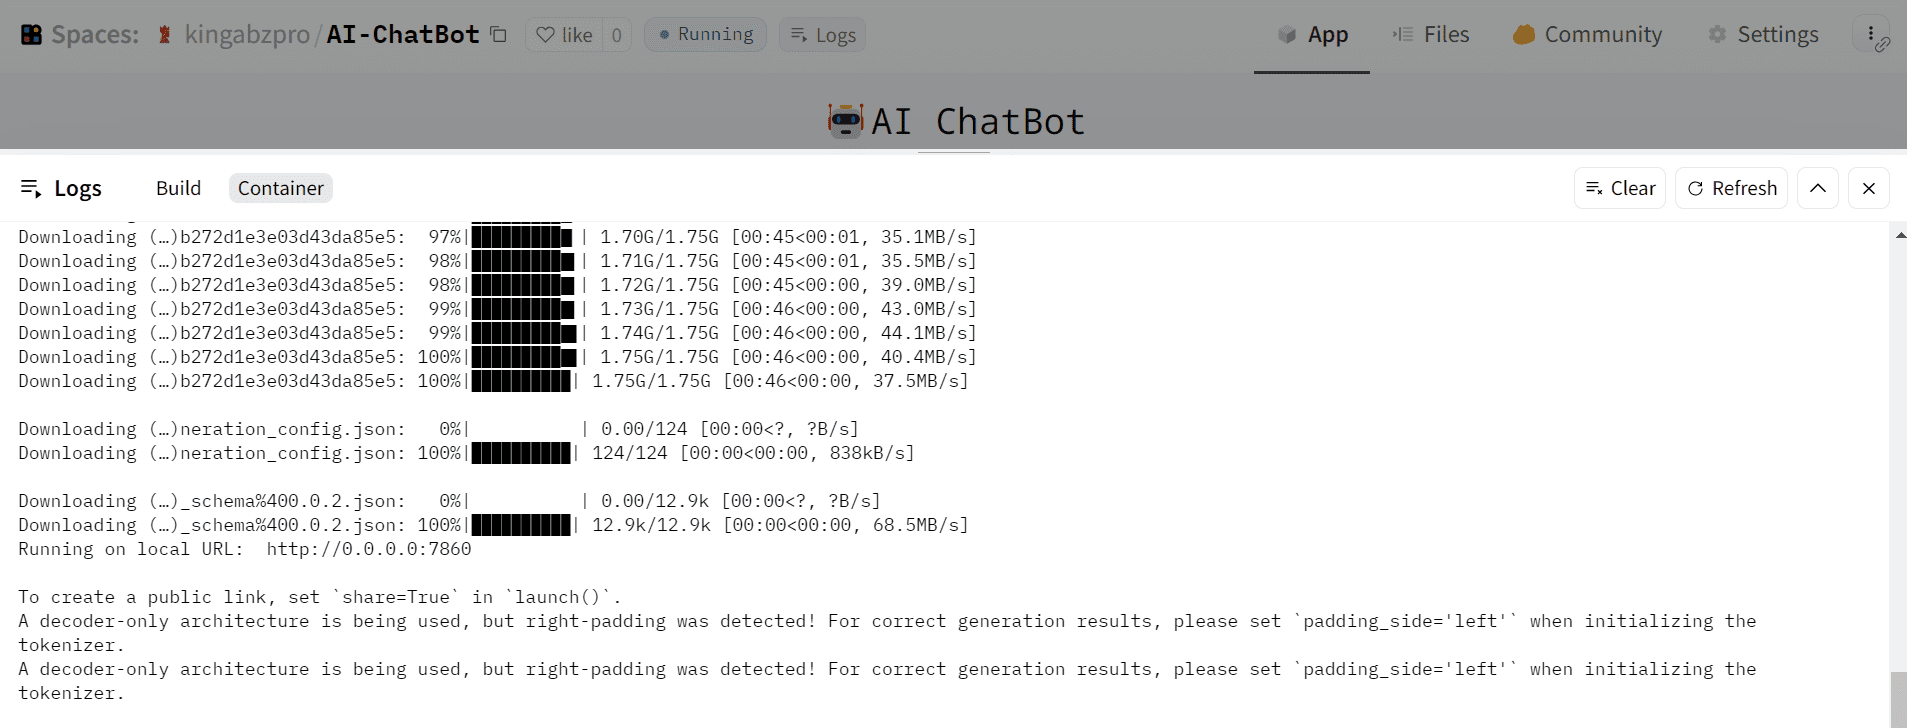 สร้าง AI Chatbot ใน 5 นาทีด้วย Hugging Face และ Gradio